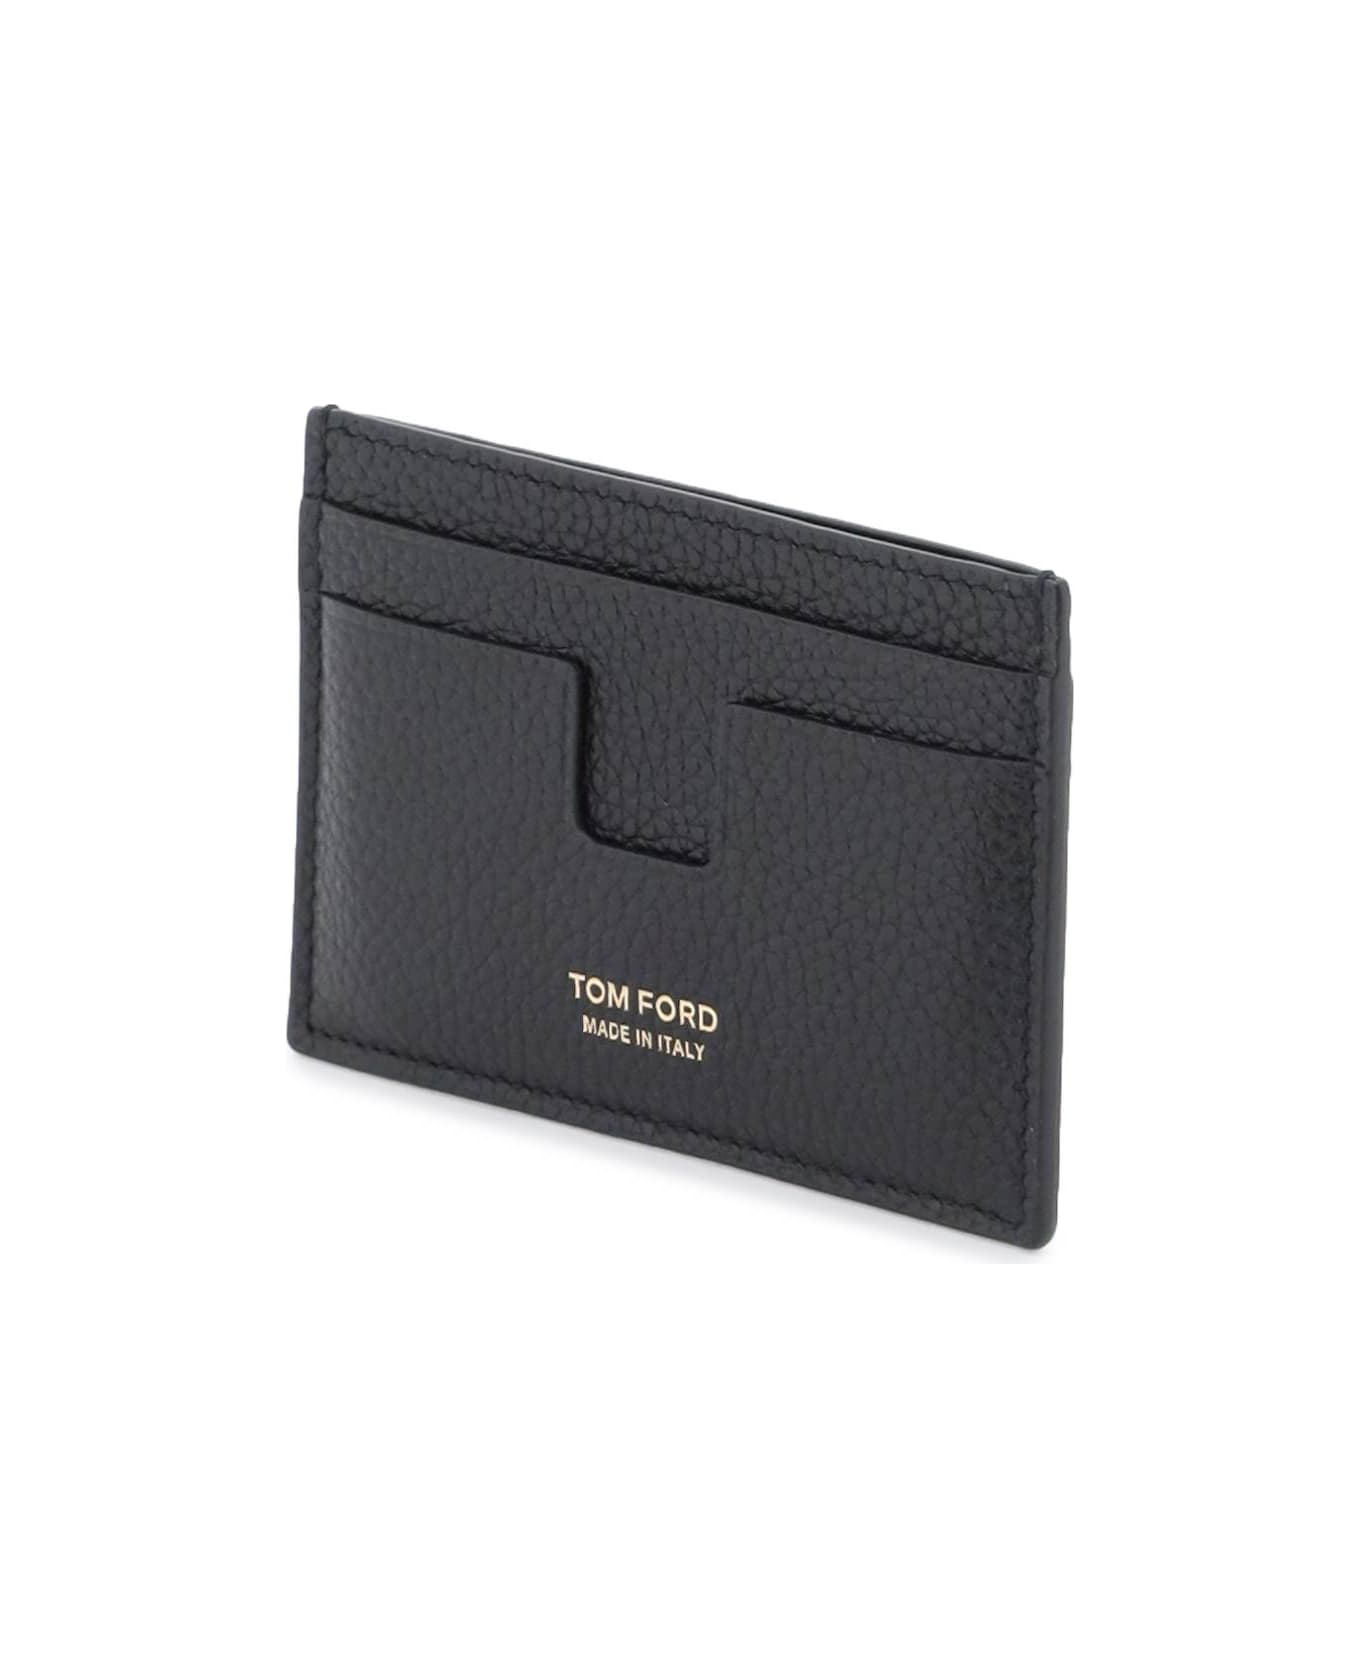 Tom Ford Leather Card Holder - black